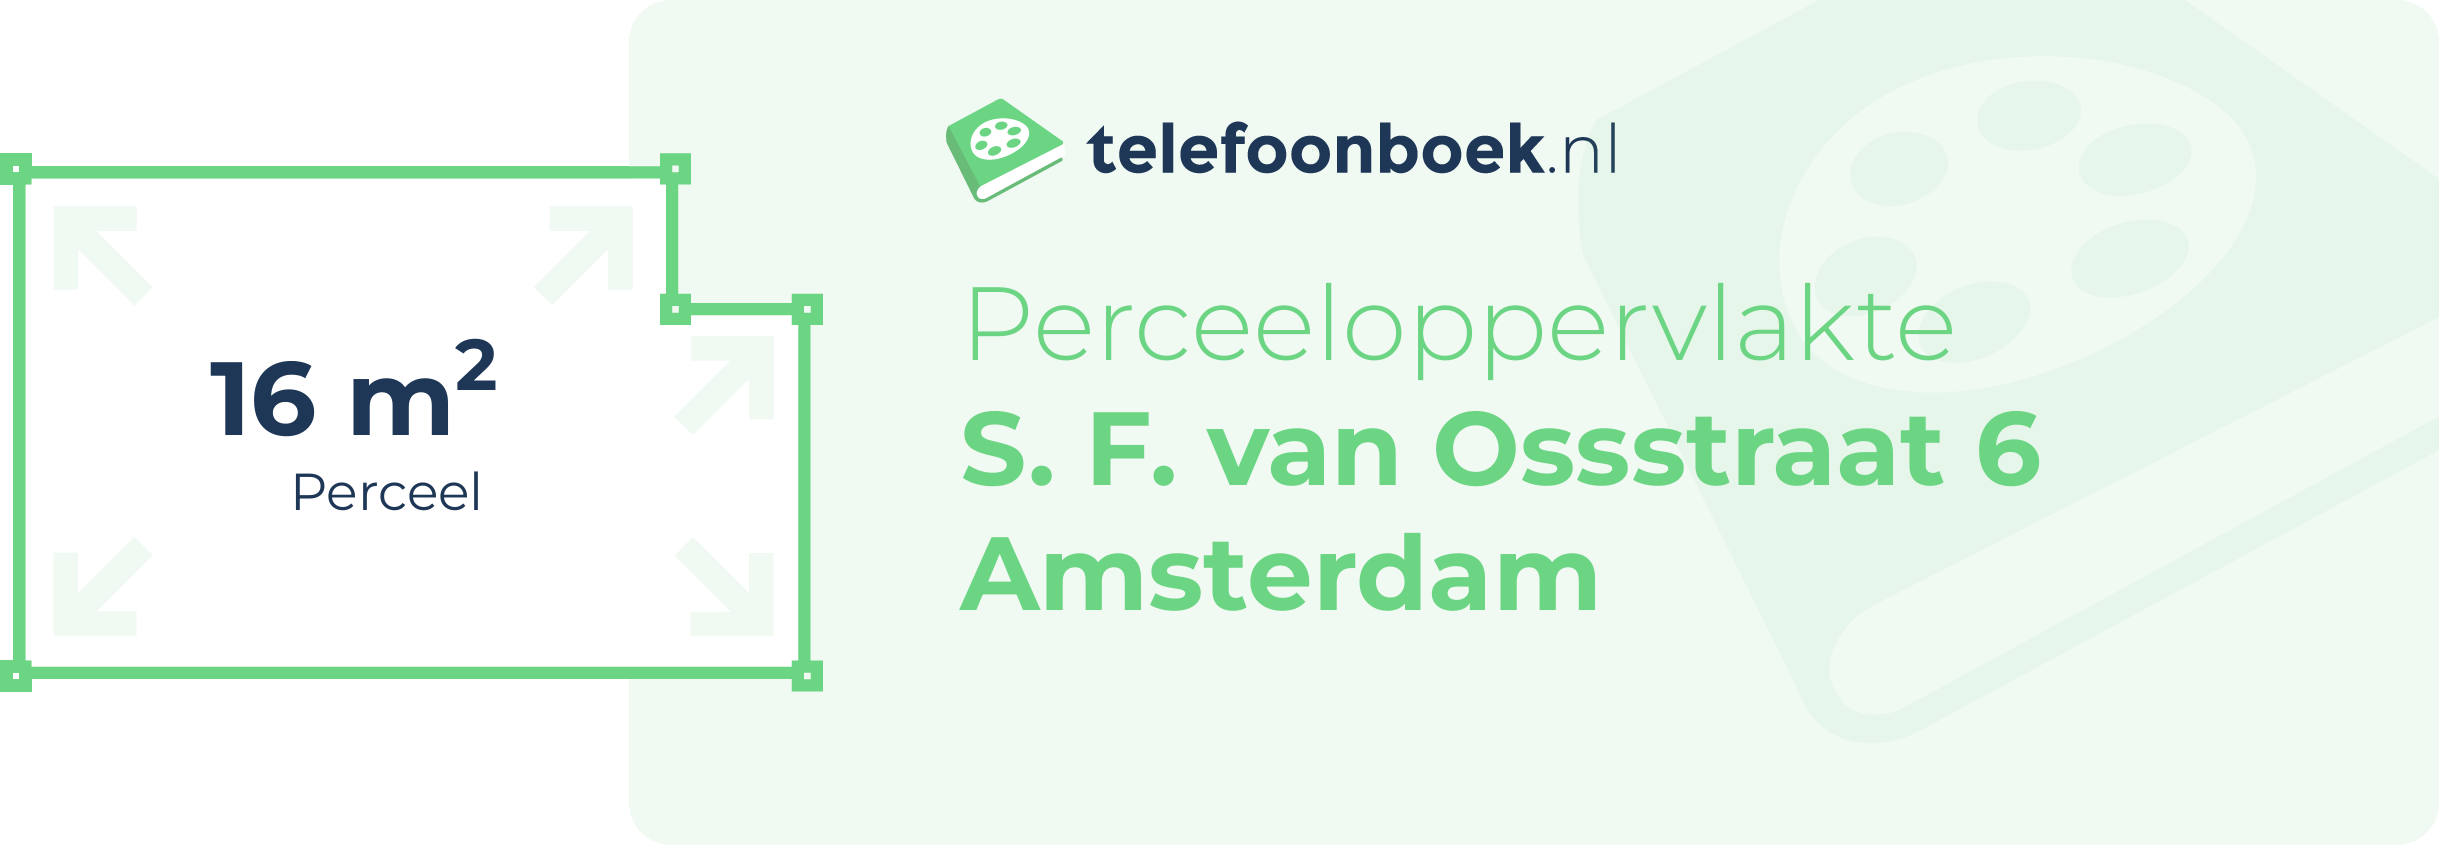 Perceeloppervlakte S. F. Van Ossstraat 6 Amsterdam